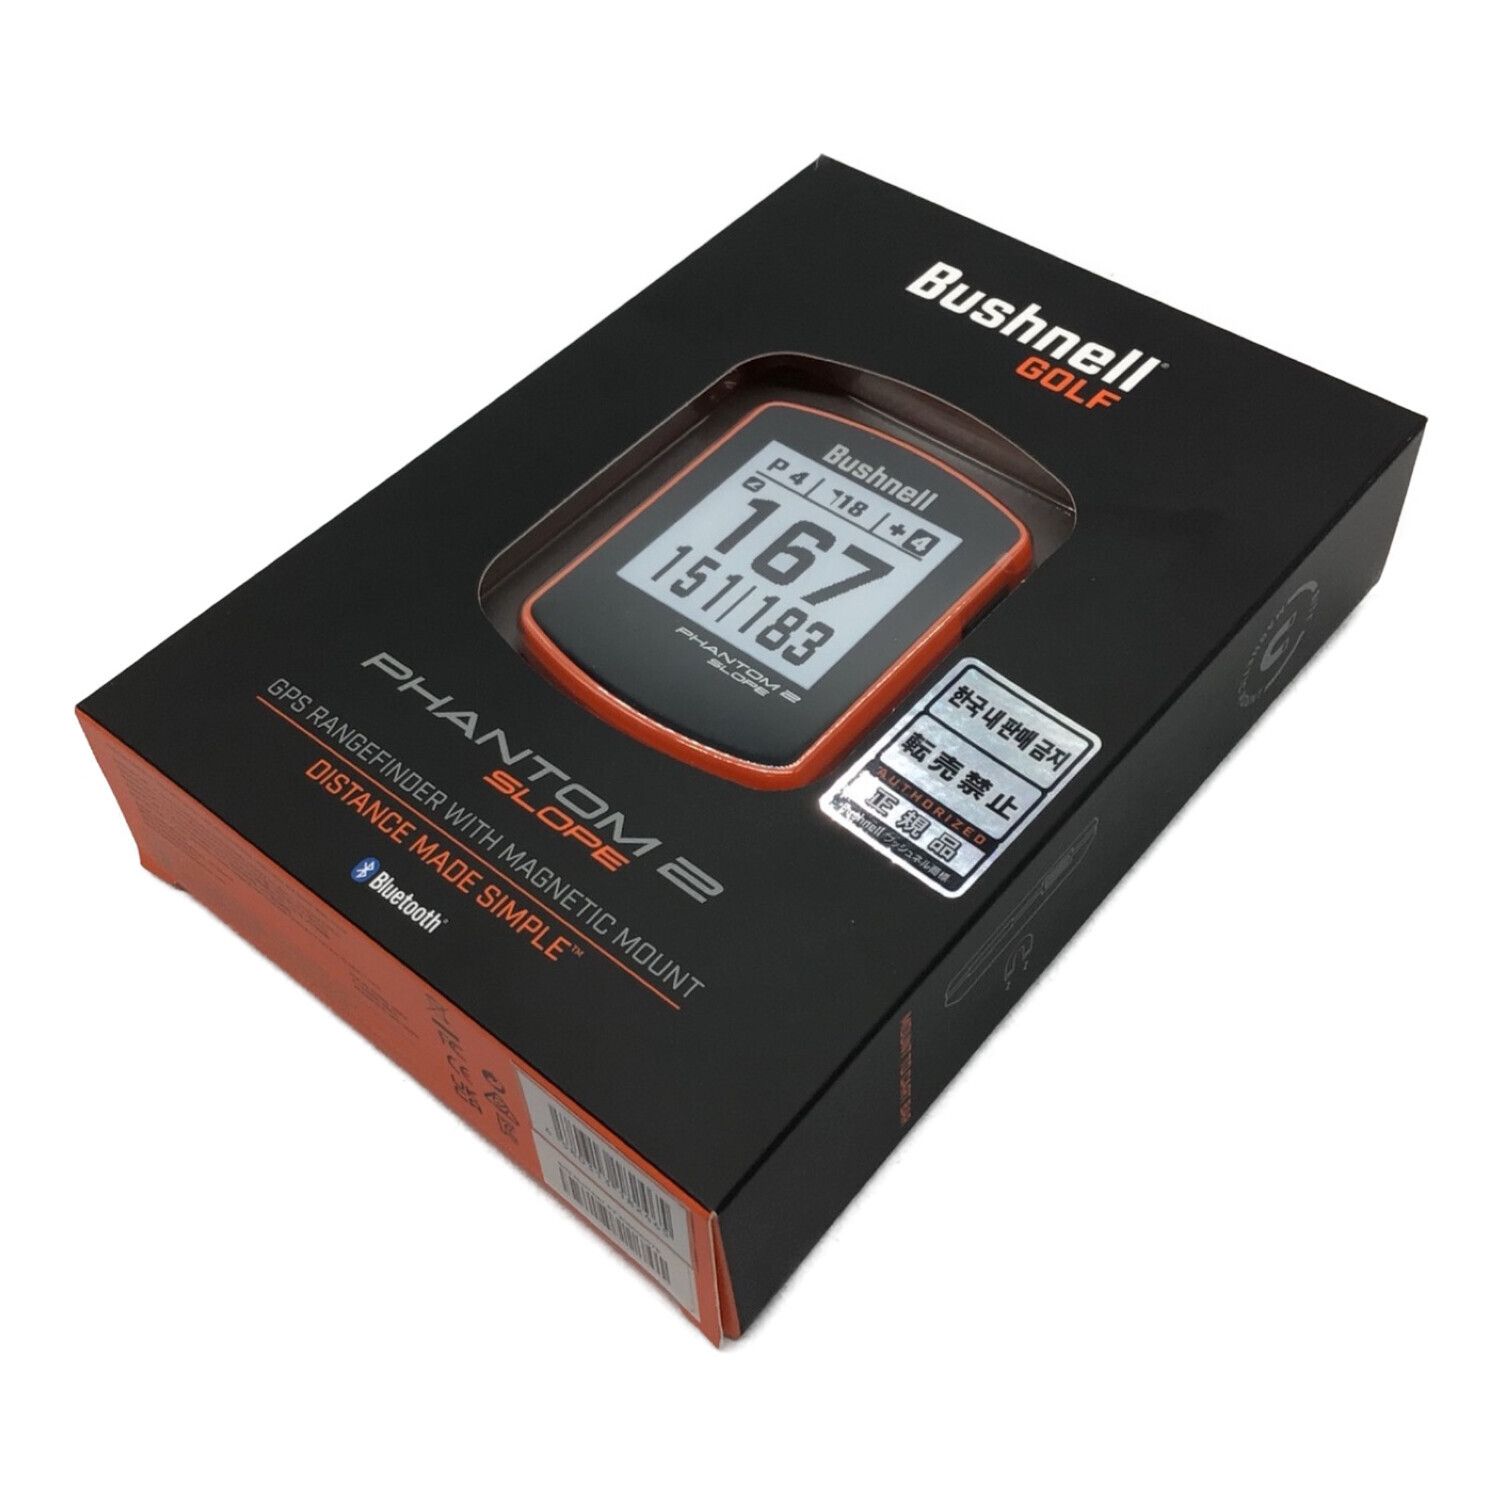 Bushnell (ブッシュネル) ファントム2 スロープ GPS対応 オレンジ 未使用品 ゴルフ距離測定器